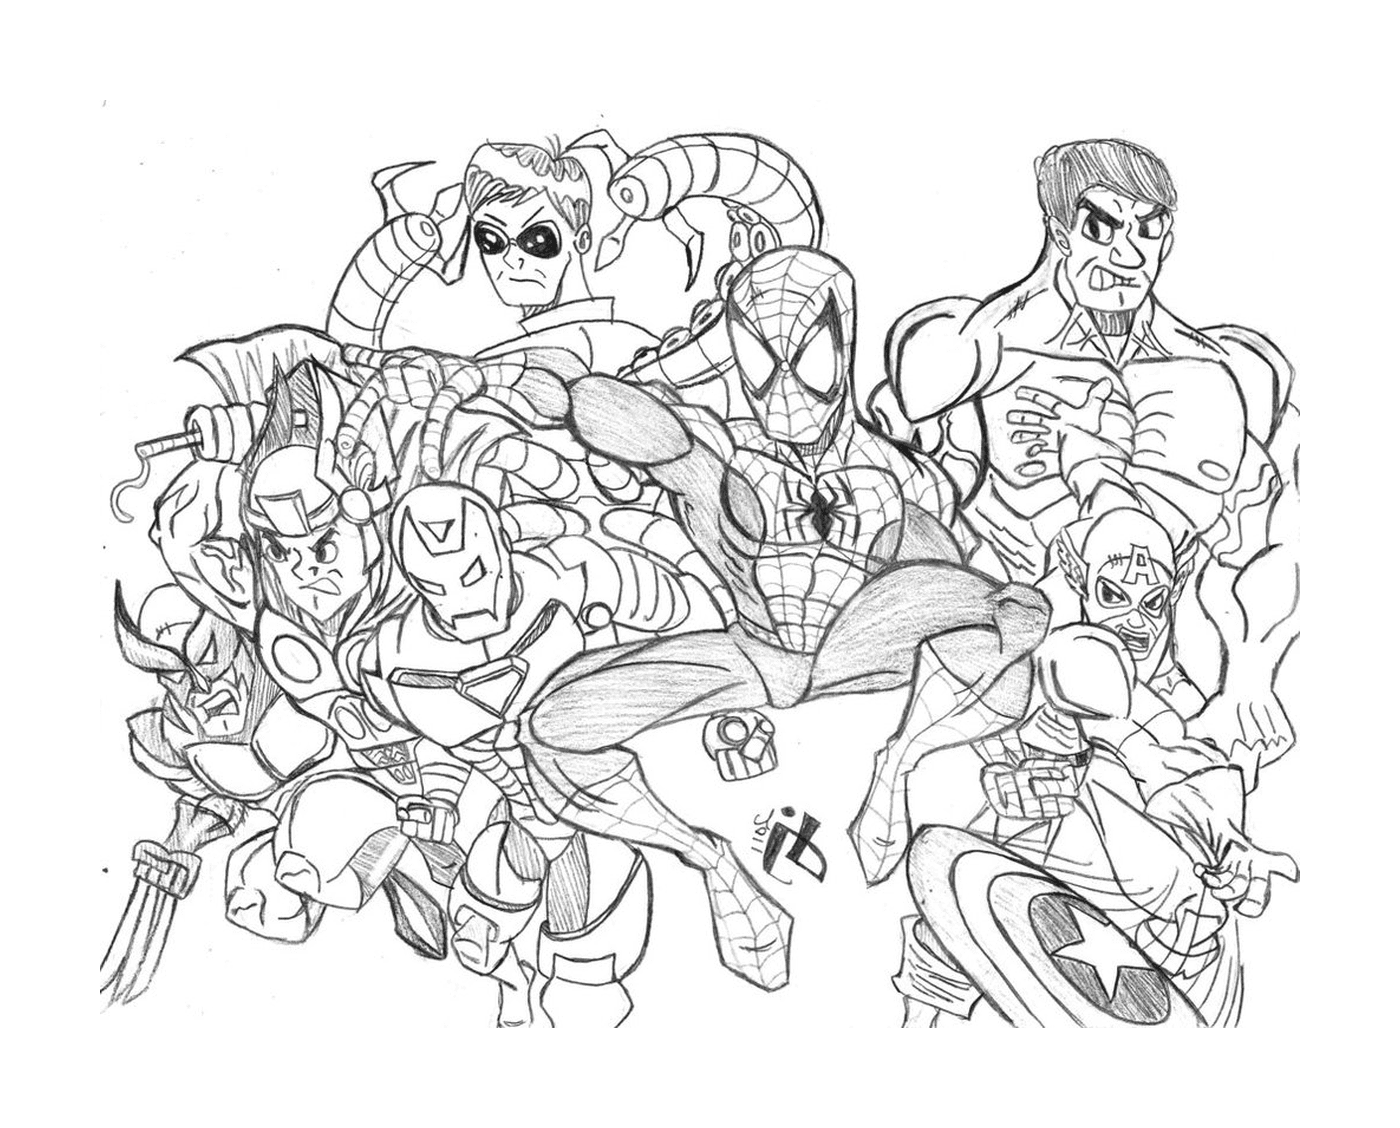  Un grupo de superhéroes dibujados 